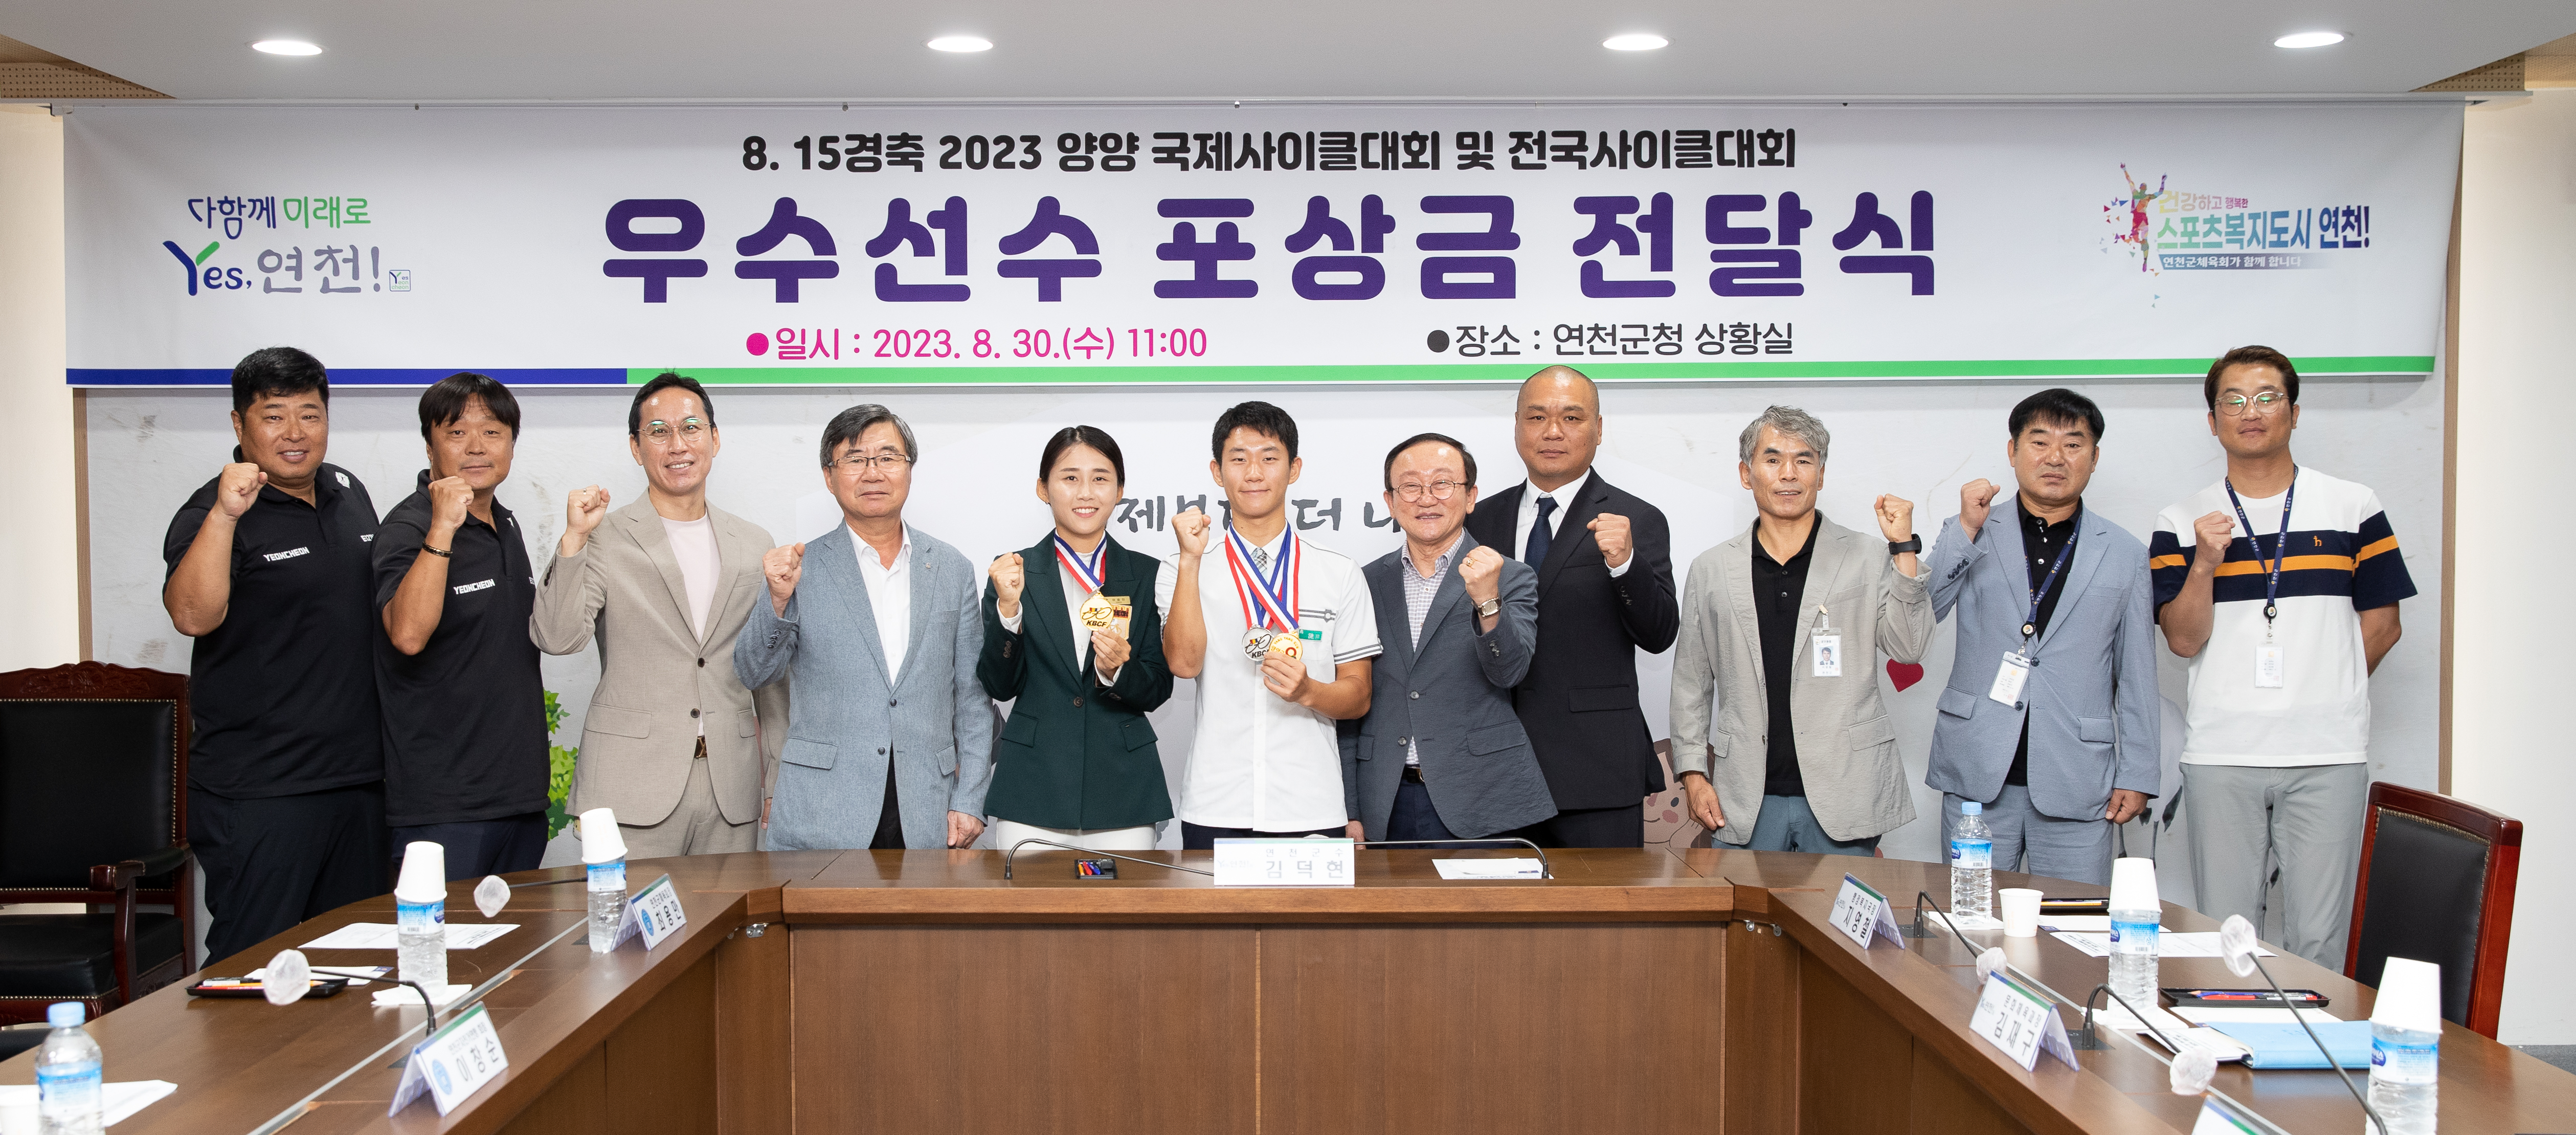 김덕현 연천군수, 국제사이클대회 입상 선수 포상금 전달 이미지 1 - 본문에 자세한설명을 제공합니다.